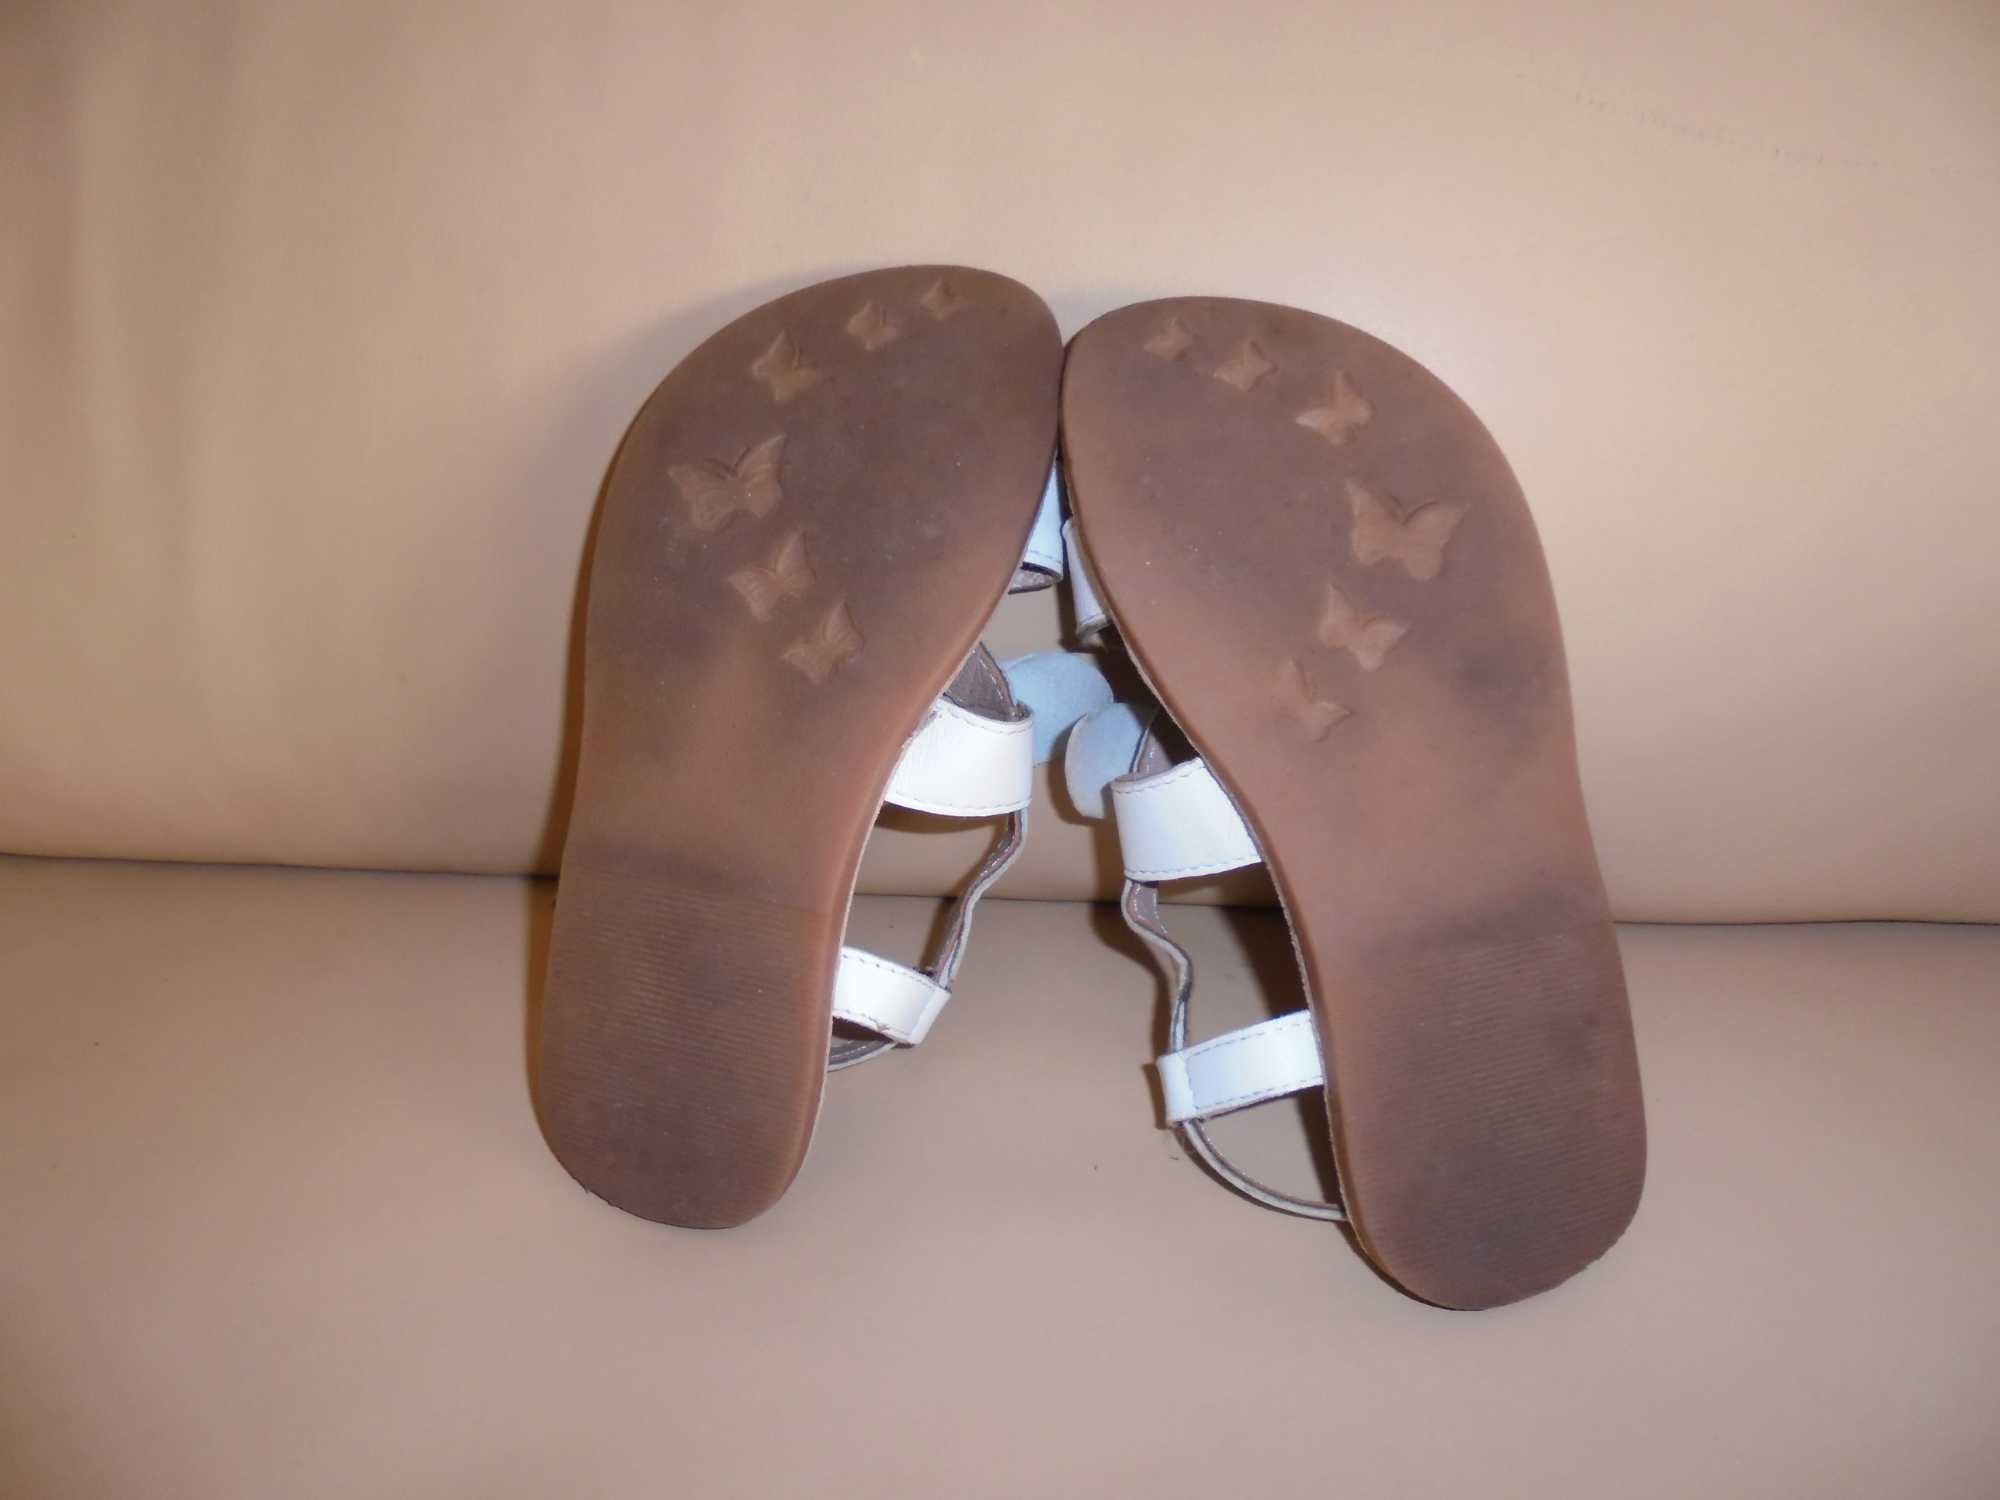 sandálias de menina cor branca